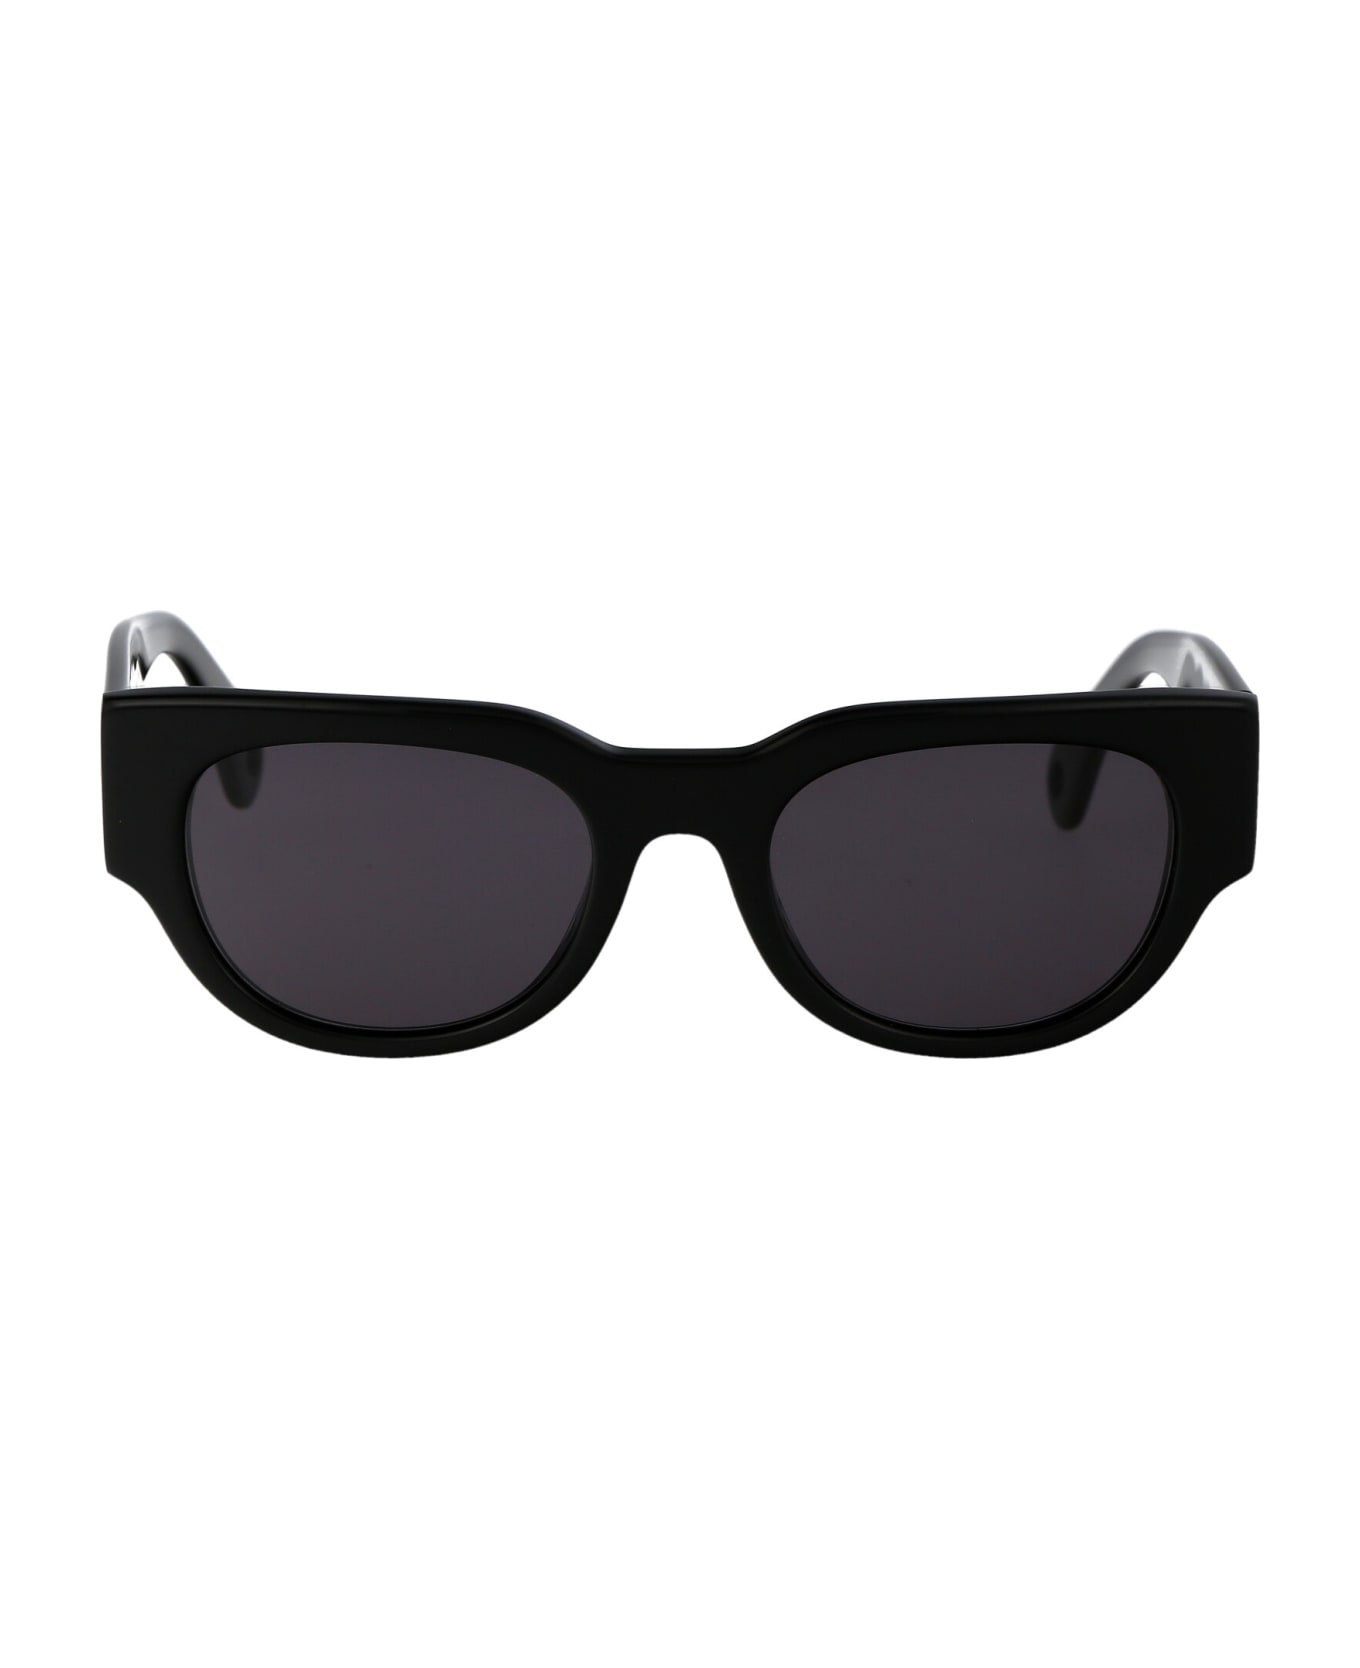 Lanvin Lnv670s Sunglasses - 001 BLACK